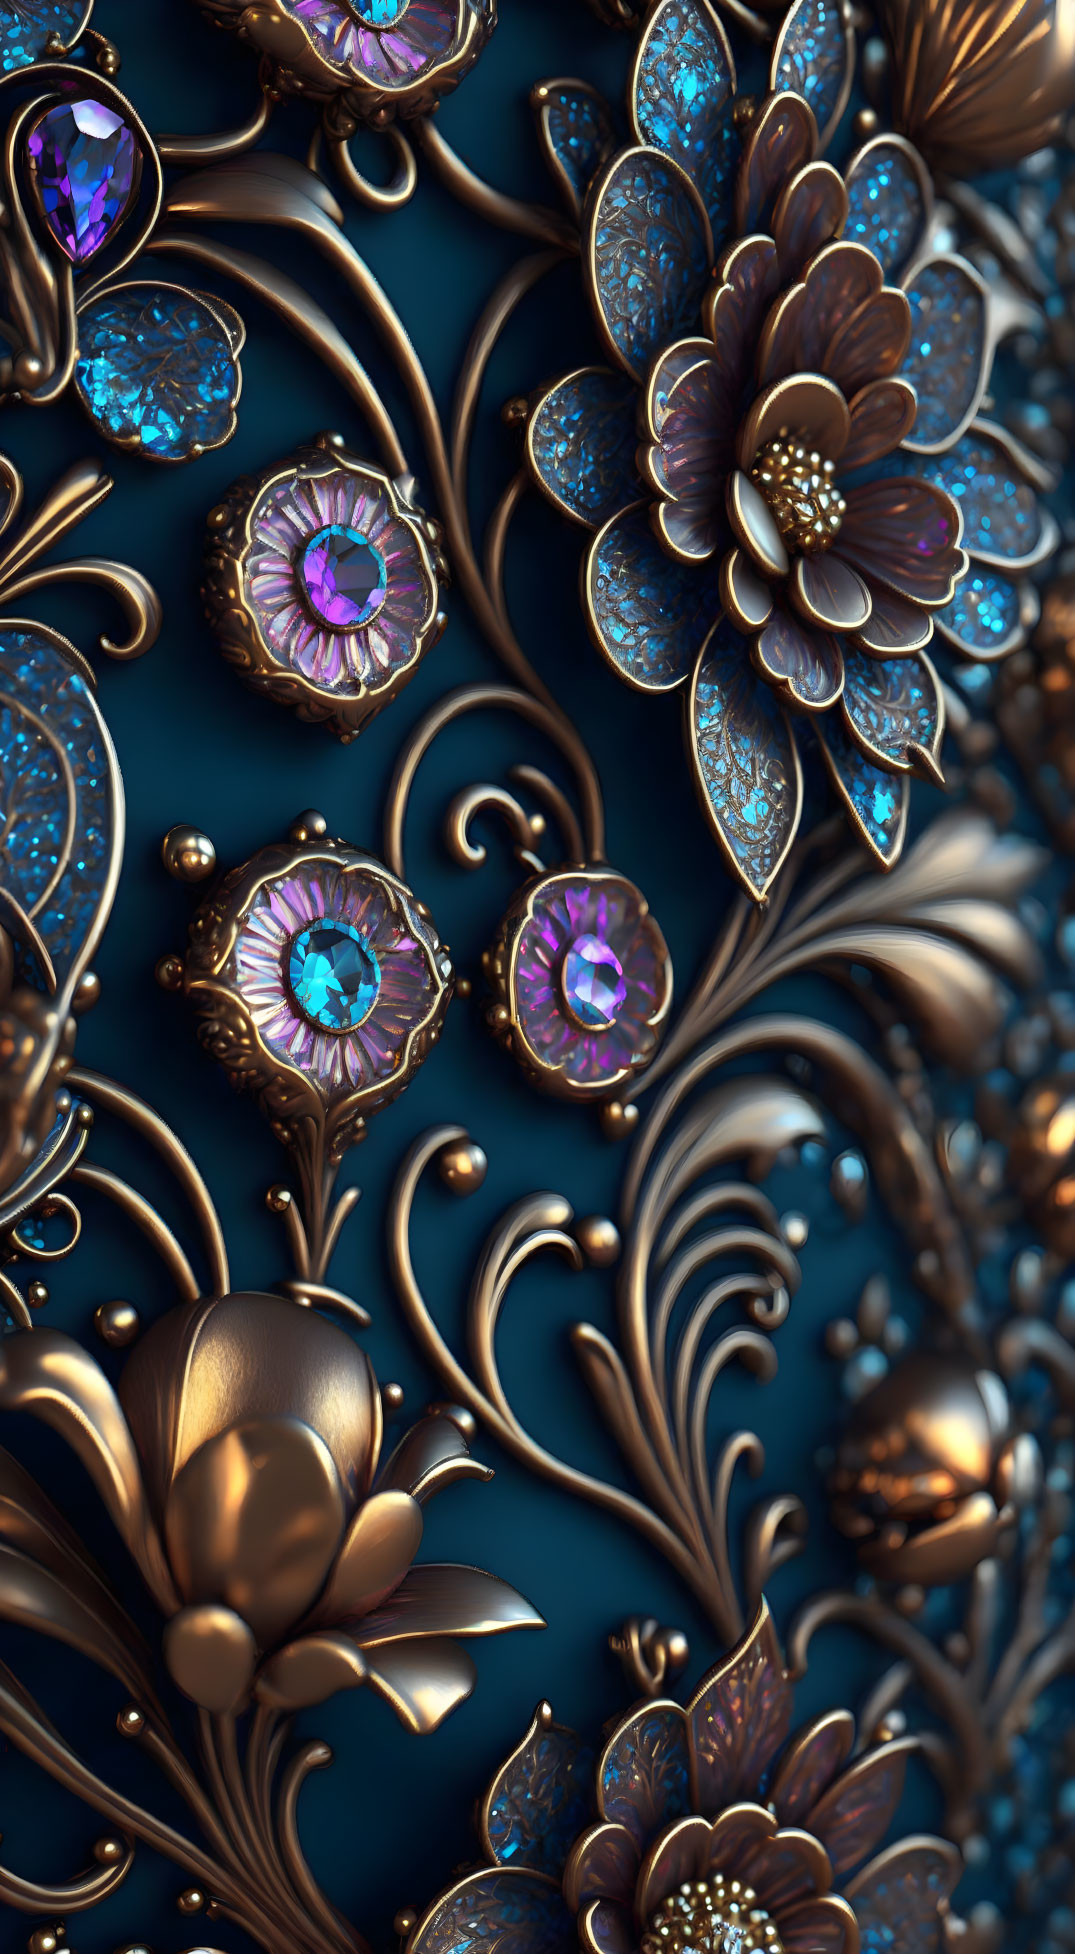 Detailed 3D Rendering of Golden Floral Patterns on Blue Background